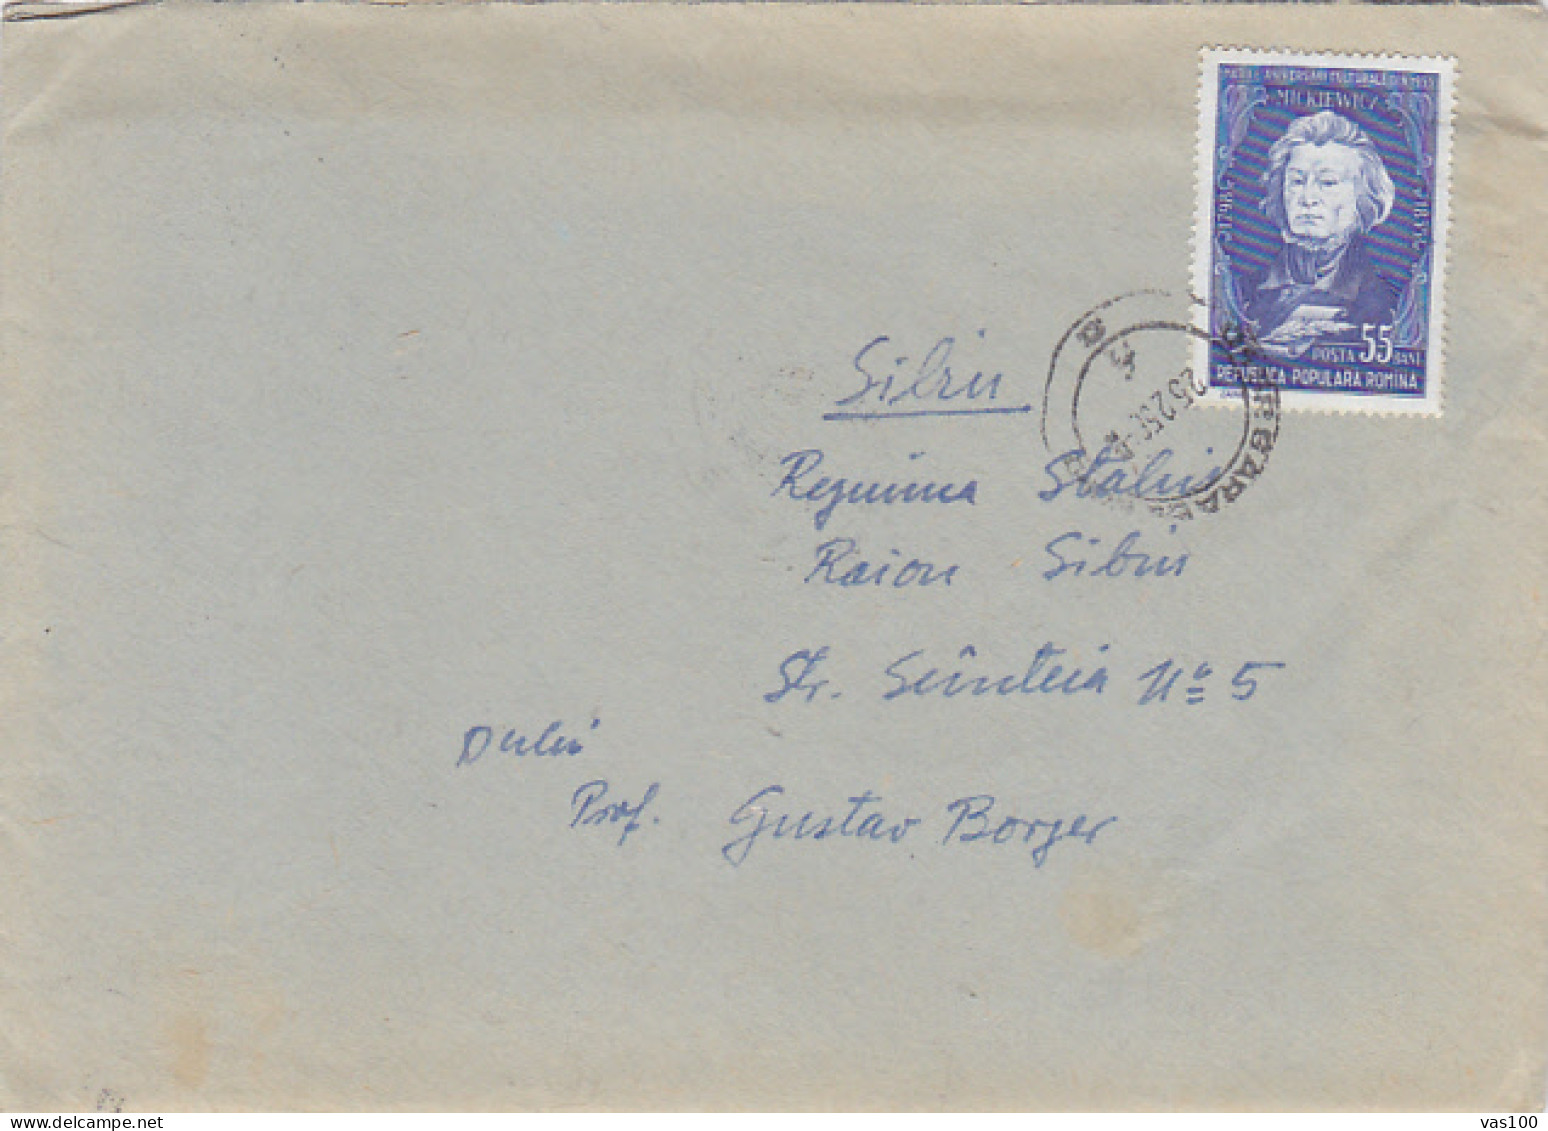 ADAM MICKIEWICZ- WRITER, STAMP ON COVER, 1956, ROMANIA - Briefe U. Dokumente